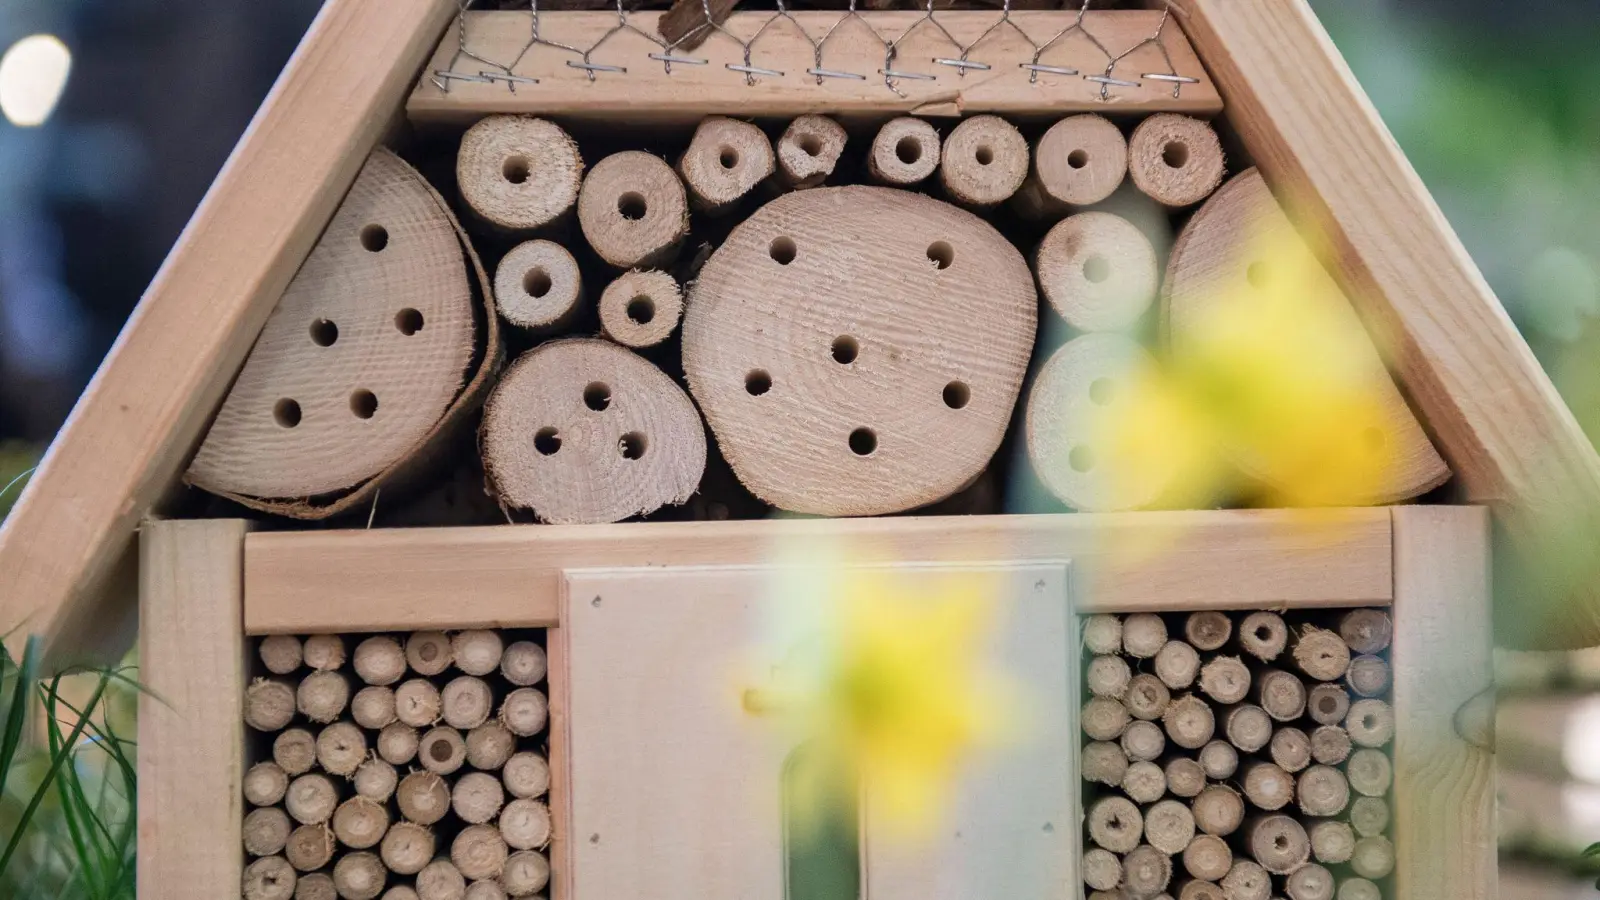 Sind die Löcher eines Insektenhotels im Stirnholz, können die Bohrungen ausfransen. (Foto: Robert Günther/dpa-tmn)